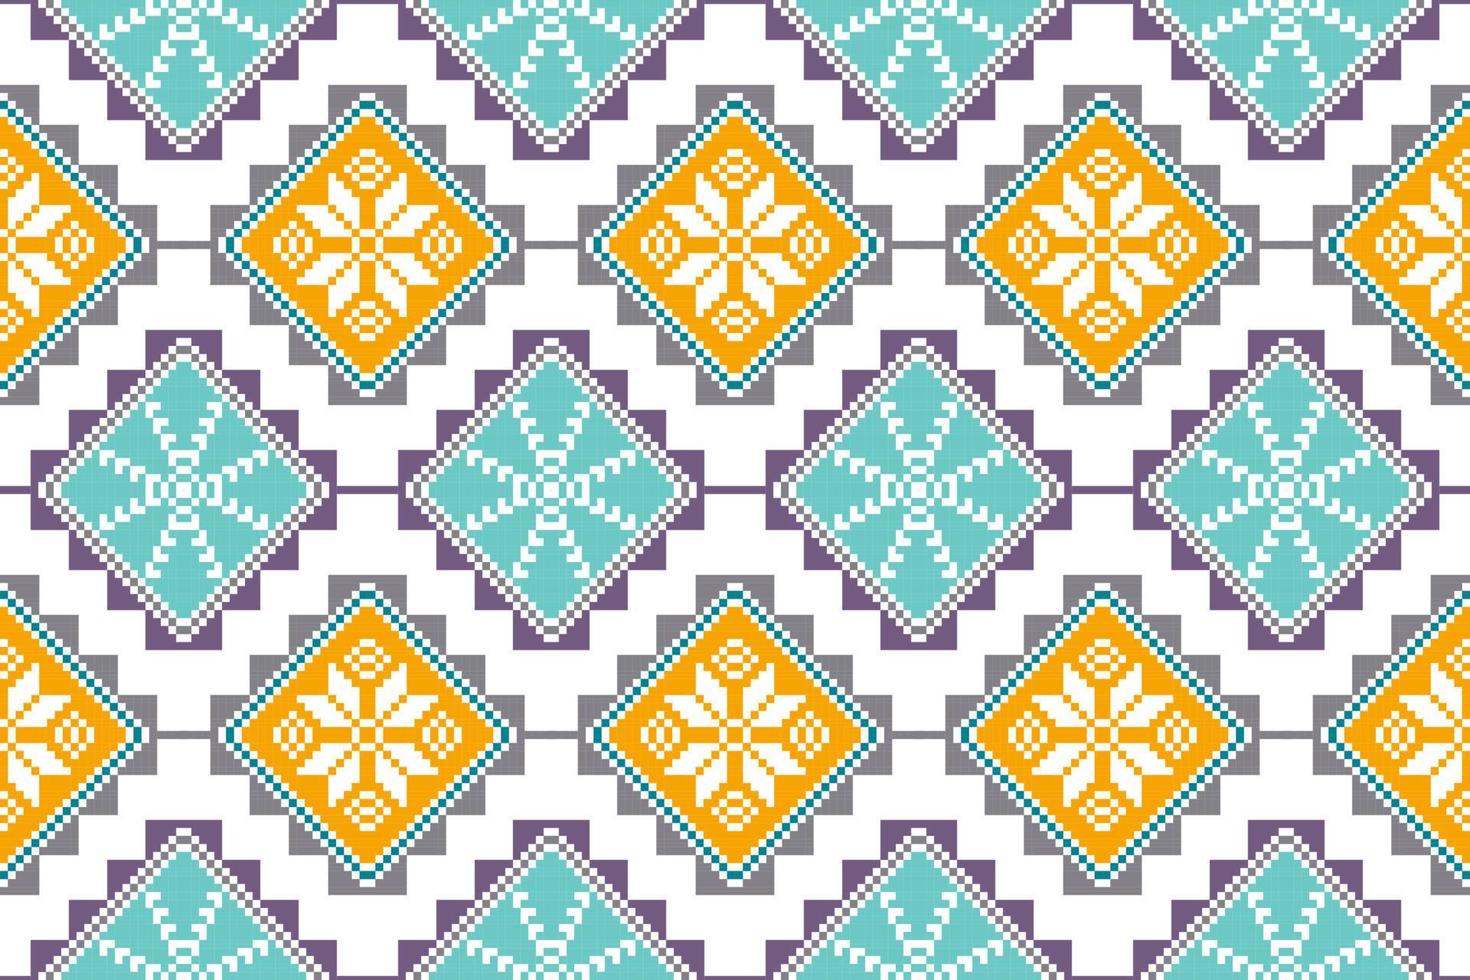 ikat etnisch naadloos patroonontwerp. Azteekse stof tapijt mandala ornamenten textiel decoraties behang. tribal boho inheemse etnische turkije traditionele borduurwerk vector background